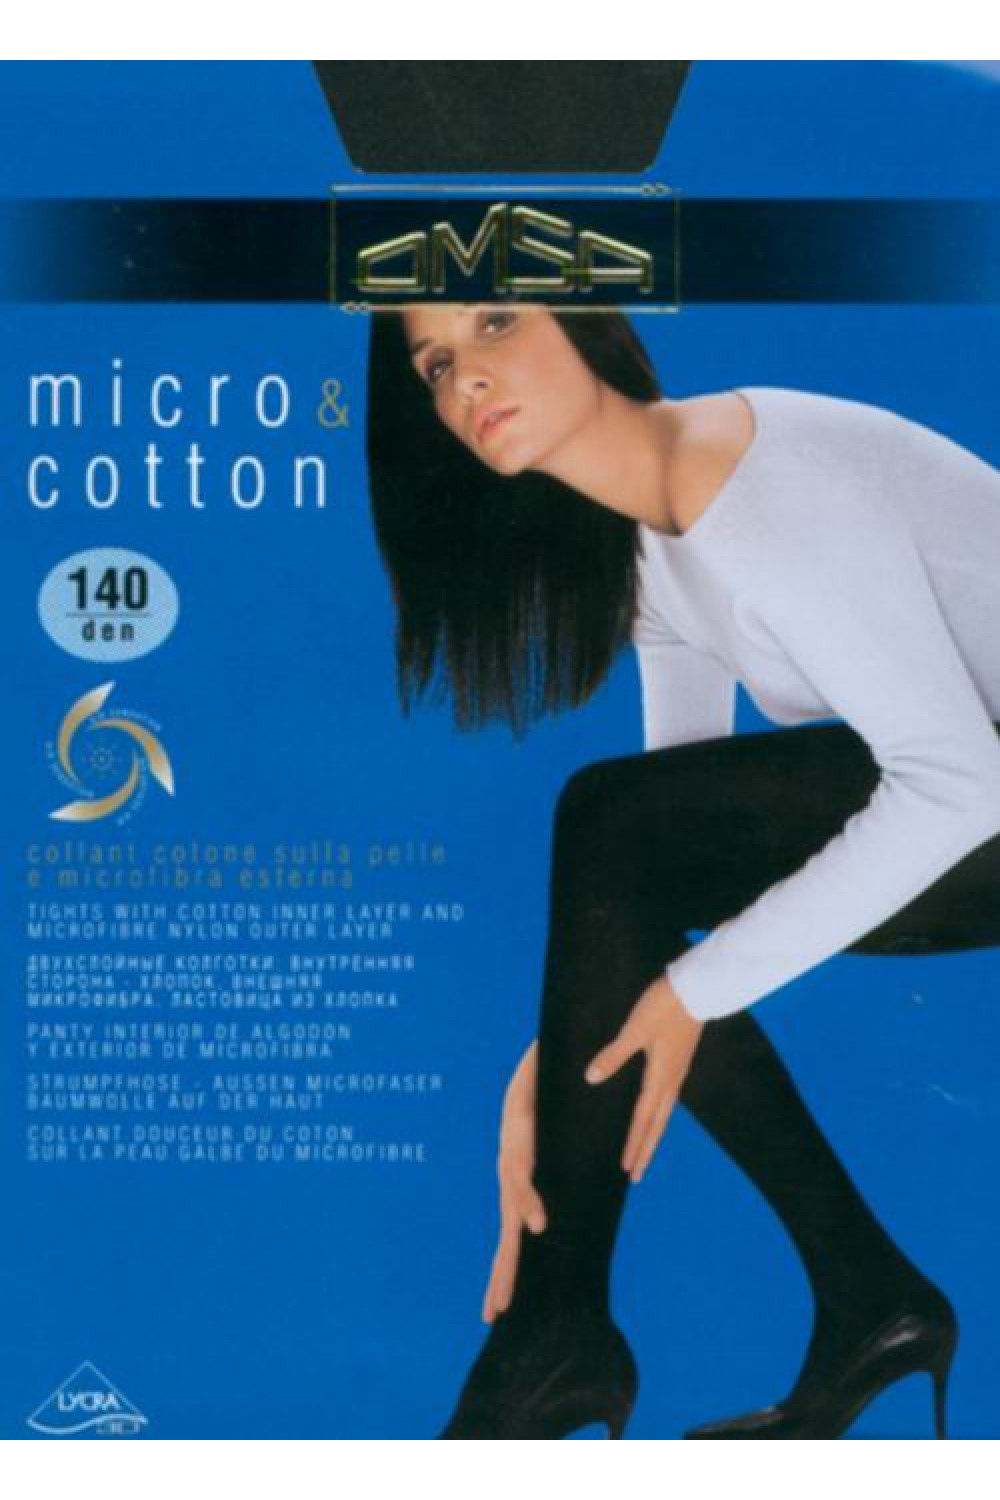 Теплые двухслойные колготки Micro & Cotton 140 (50/5), Omsa